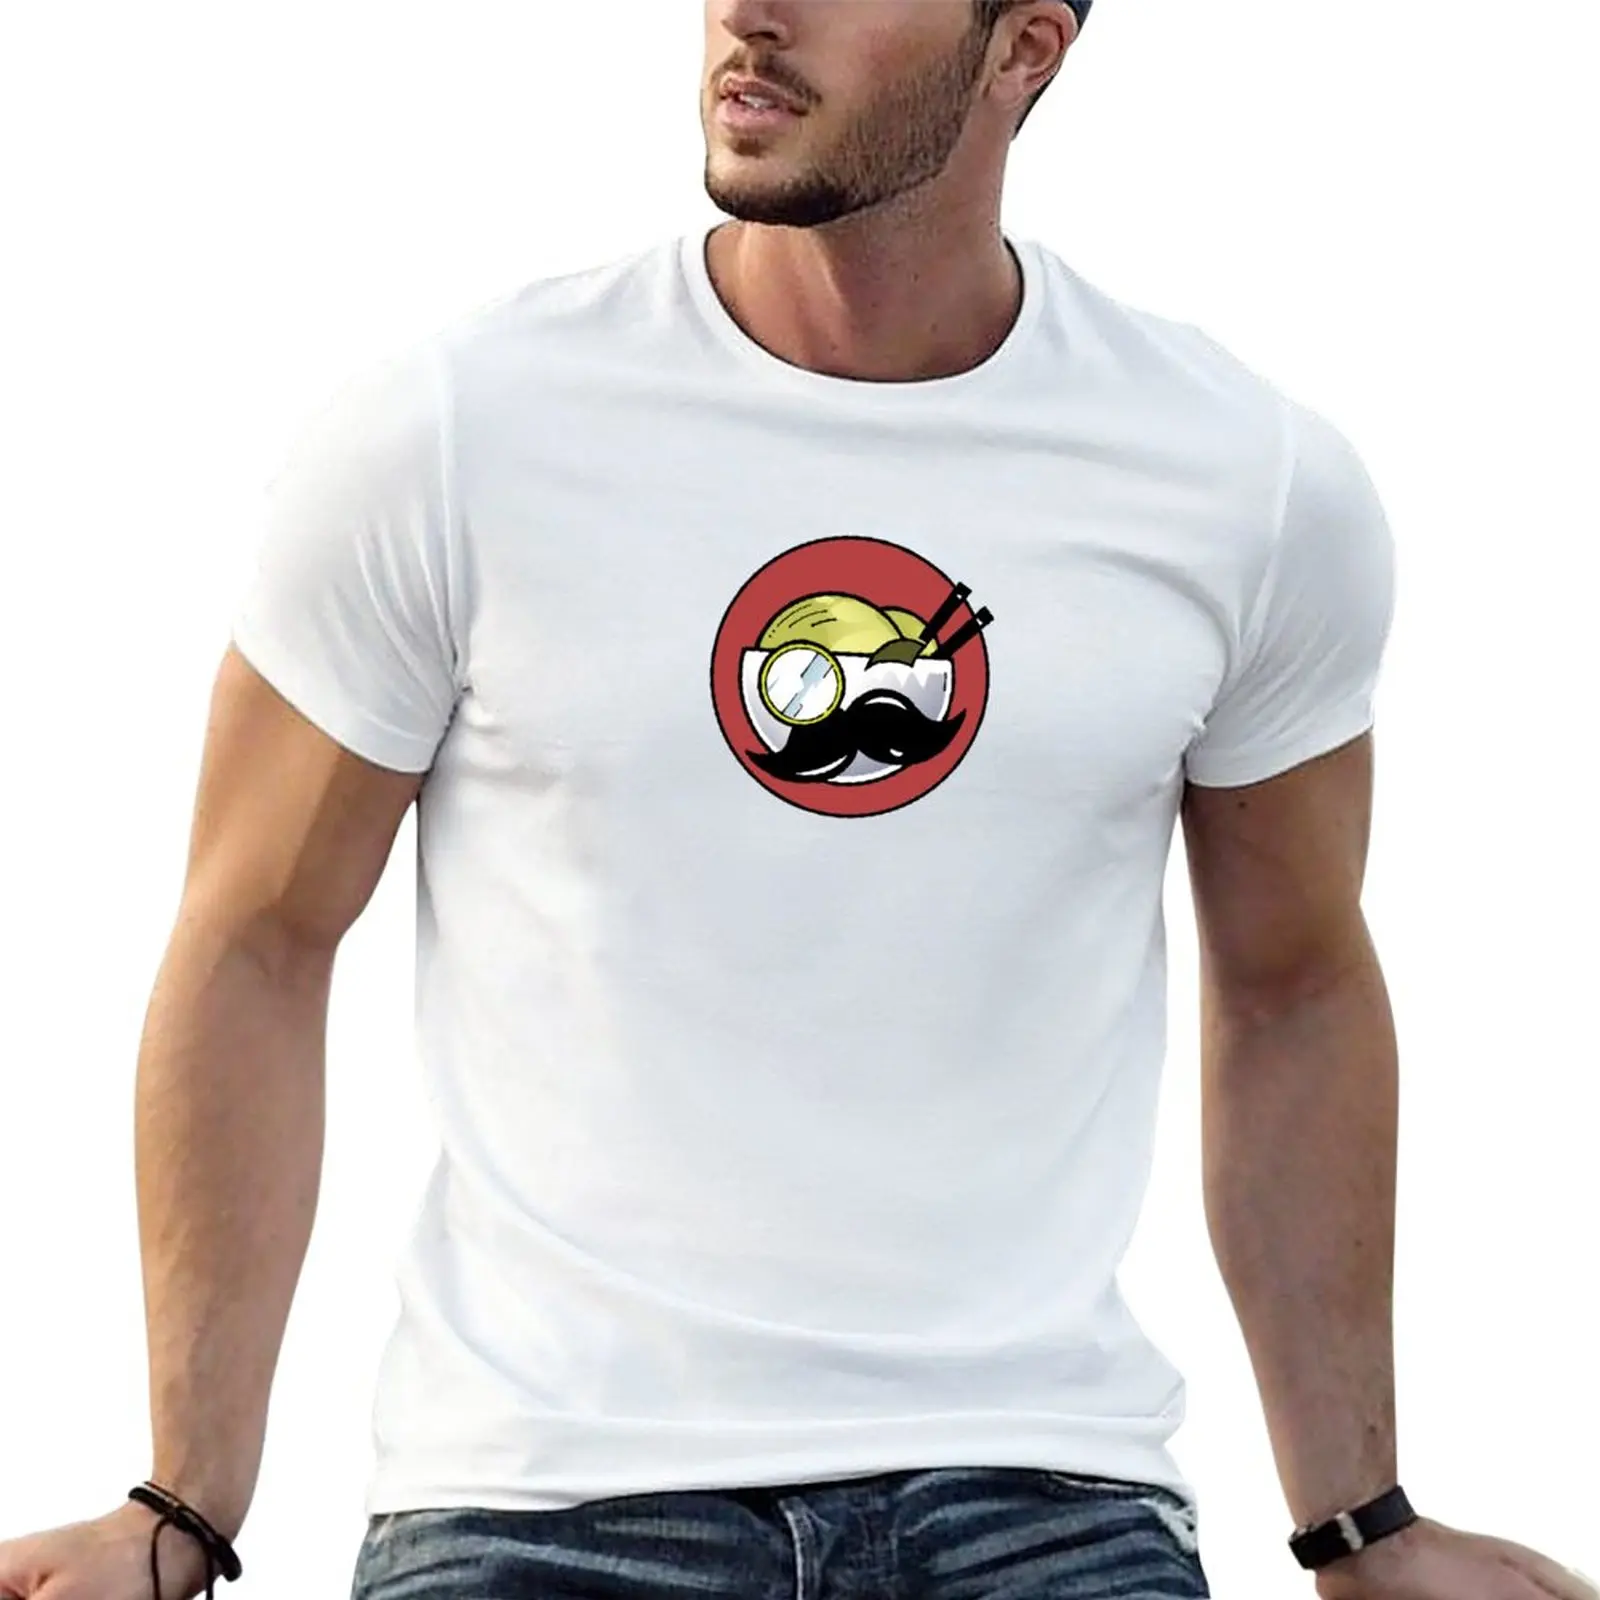 Изысканная футболка с чашей для лапши, одежда из аниме, короткие мужские футболки с рисунком, комплект футболок Изображение 0